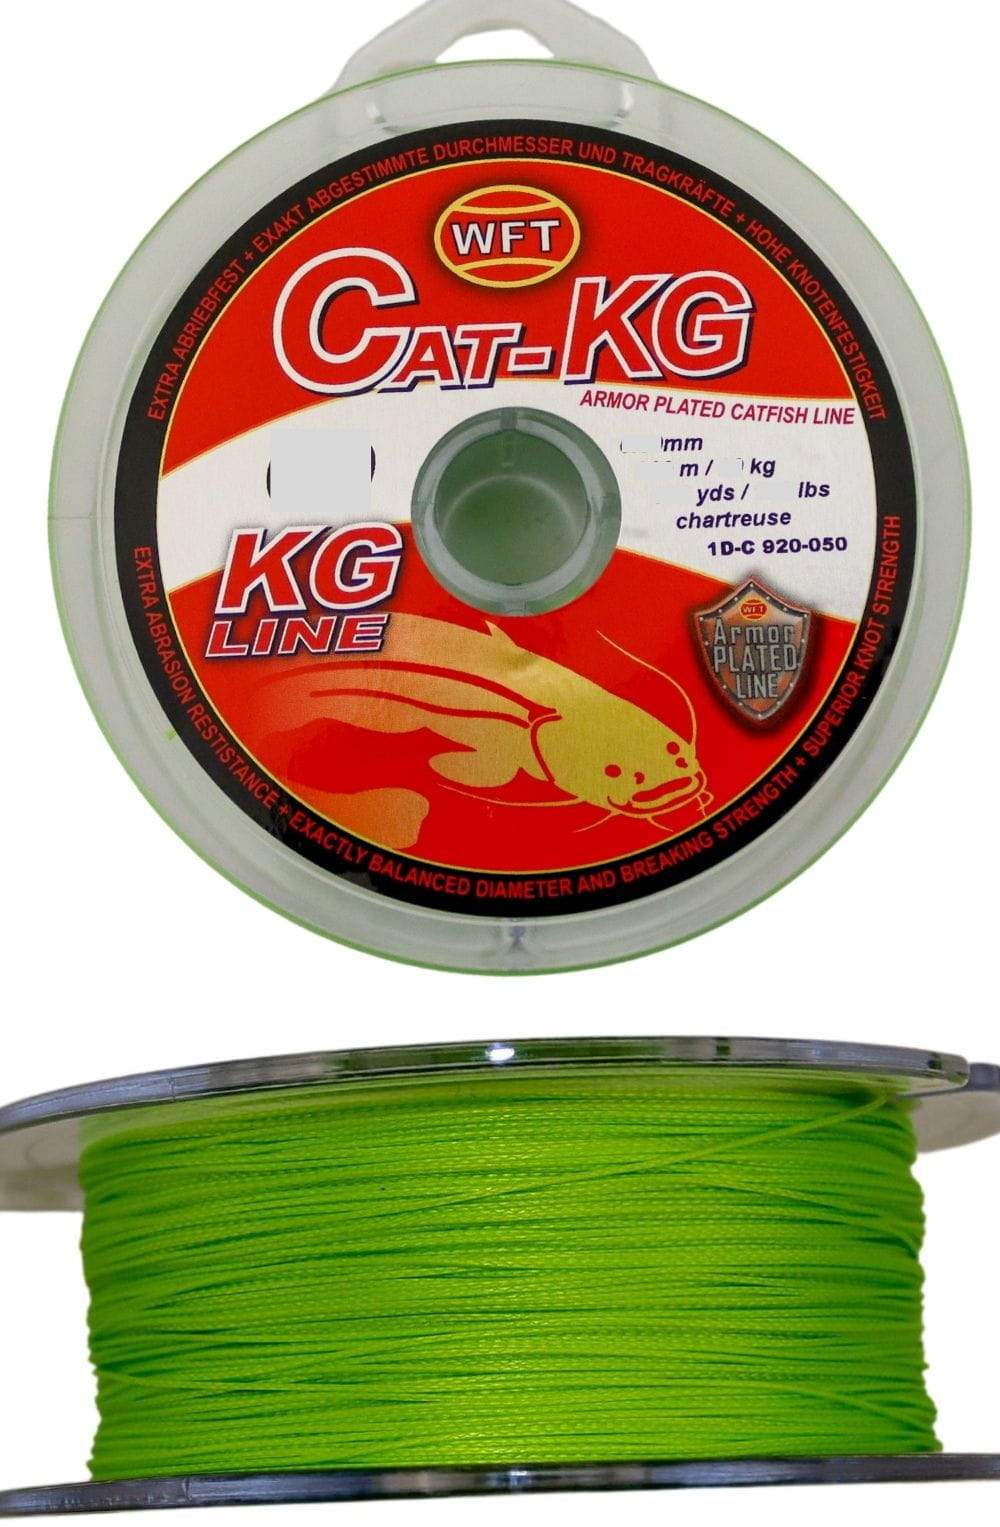 WFT CAT-KG 0,55 mm 300 m 70 kg Chartreuse